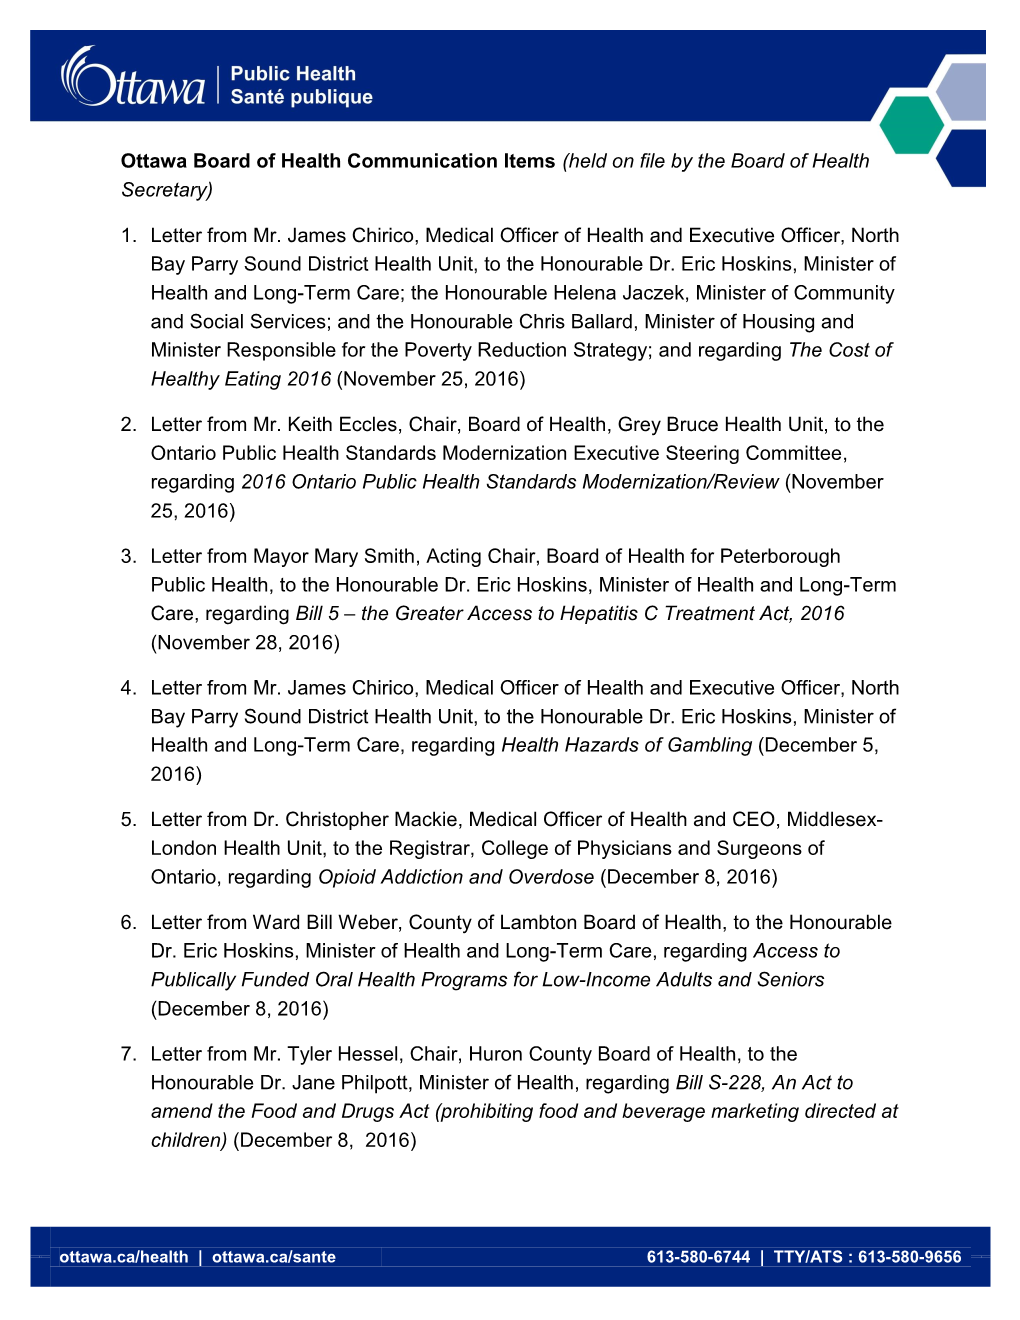 Ottawa Board of Health Communication Items List EN